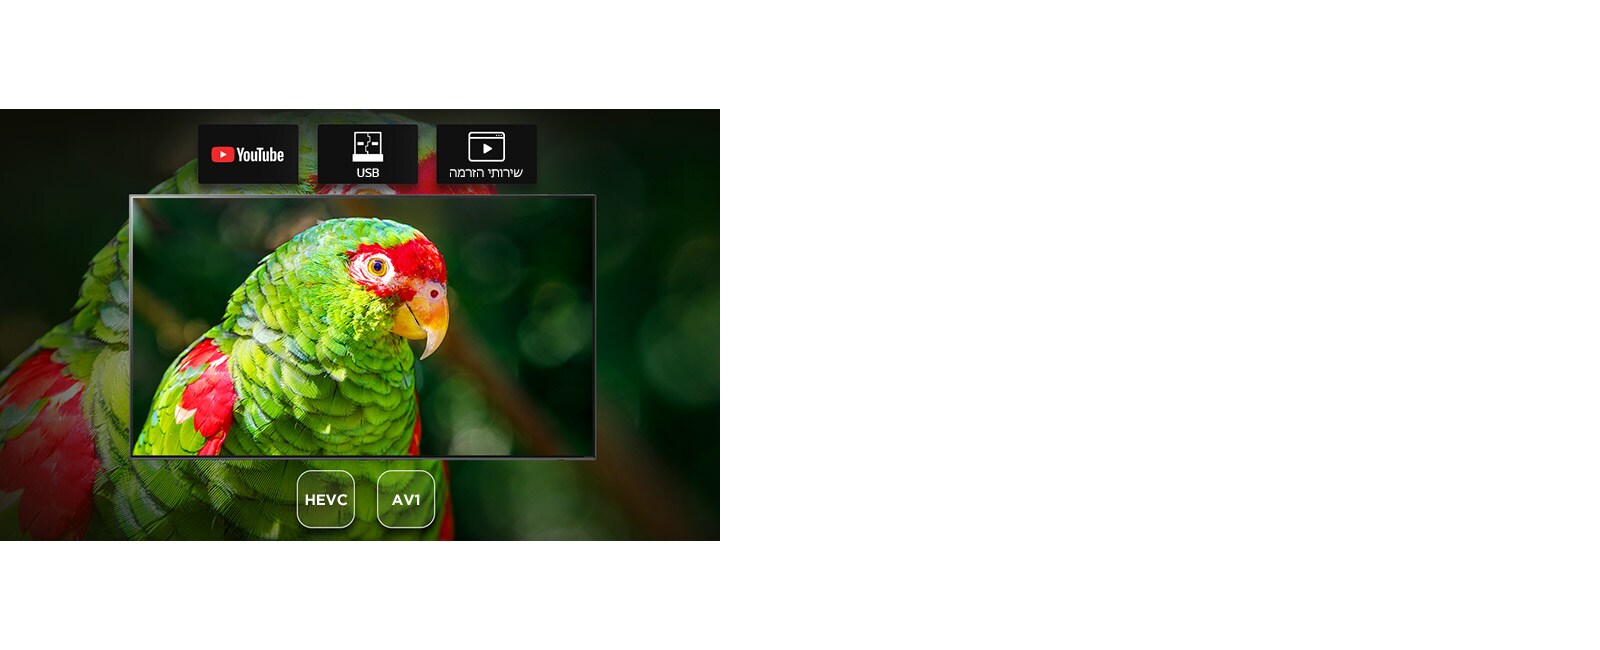 מסך הטלוויזיה מציג דוקו שנושאו תוכי ירוק עם סמלי YouTube, USB ושירות הזרמה